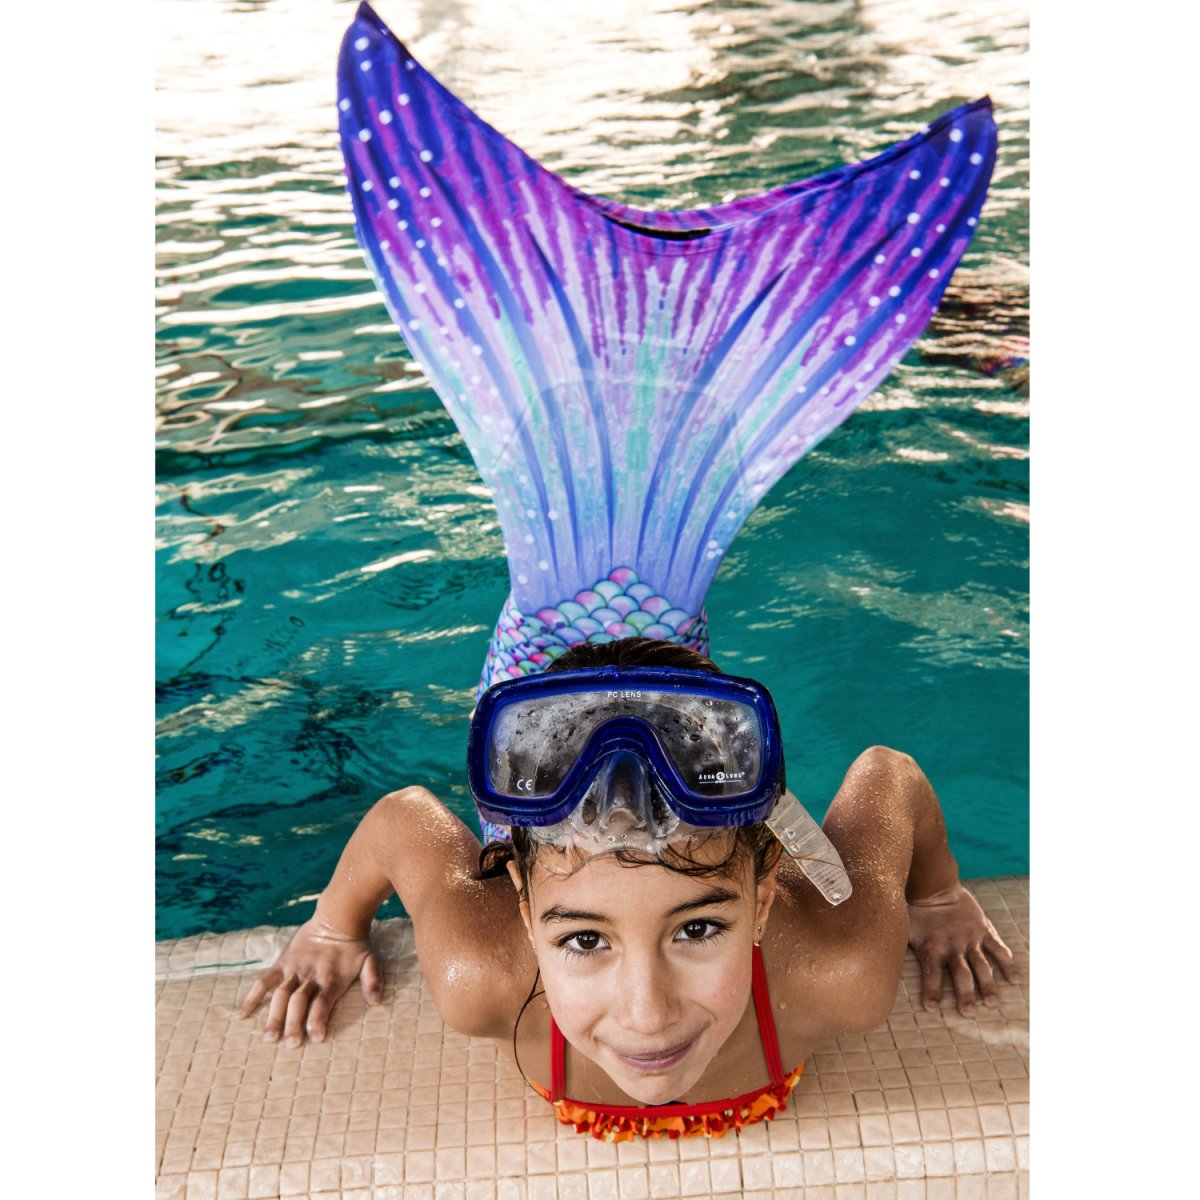 Cours de natation sirènes 2022 - Cours de natation sirenes 2022